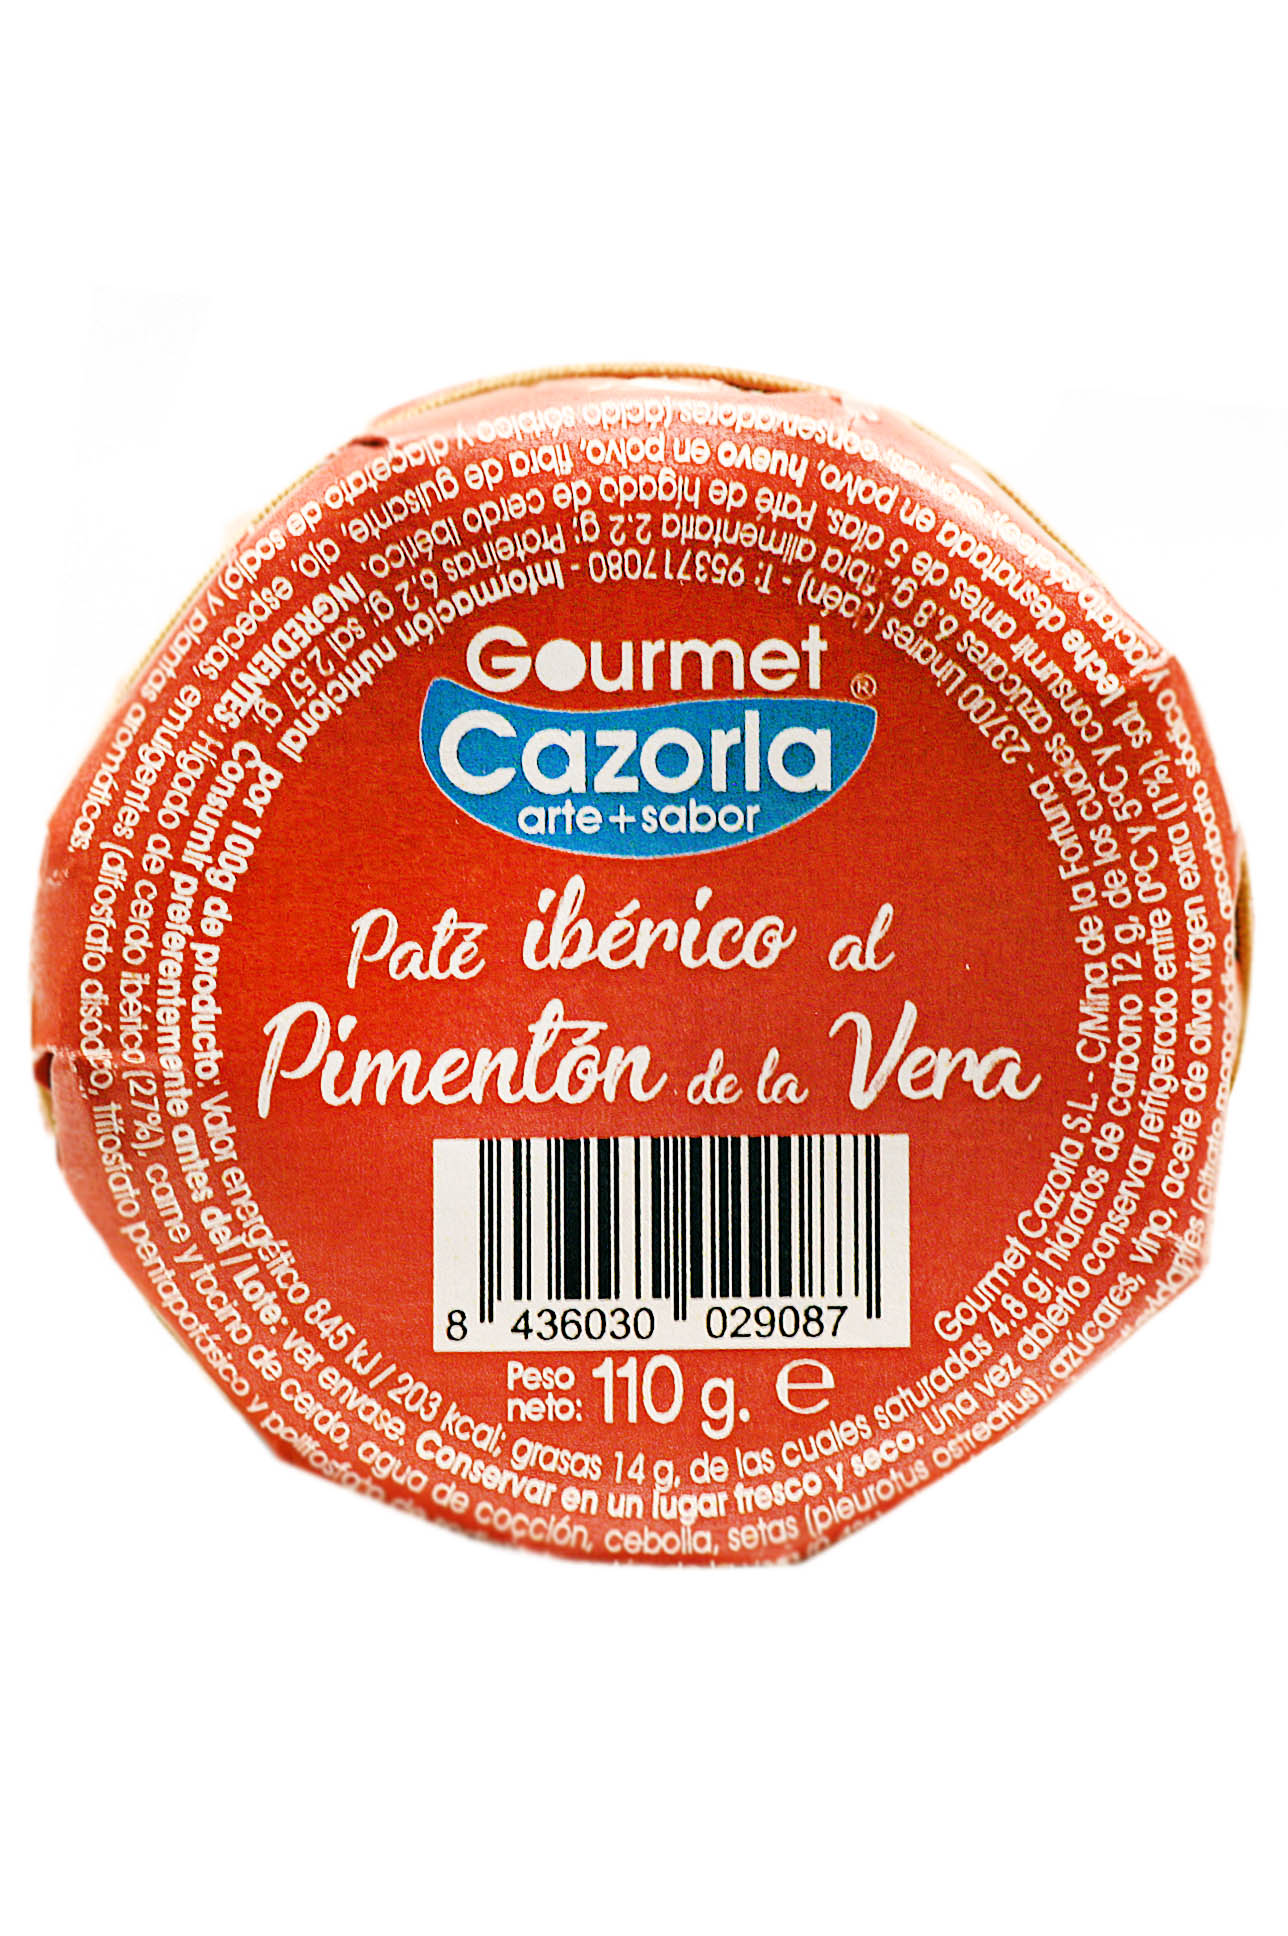 Gourmet Cazorla PM31-Iberian ham paté with spicy paprika